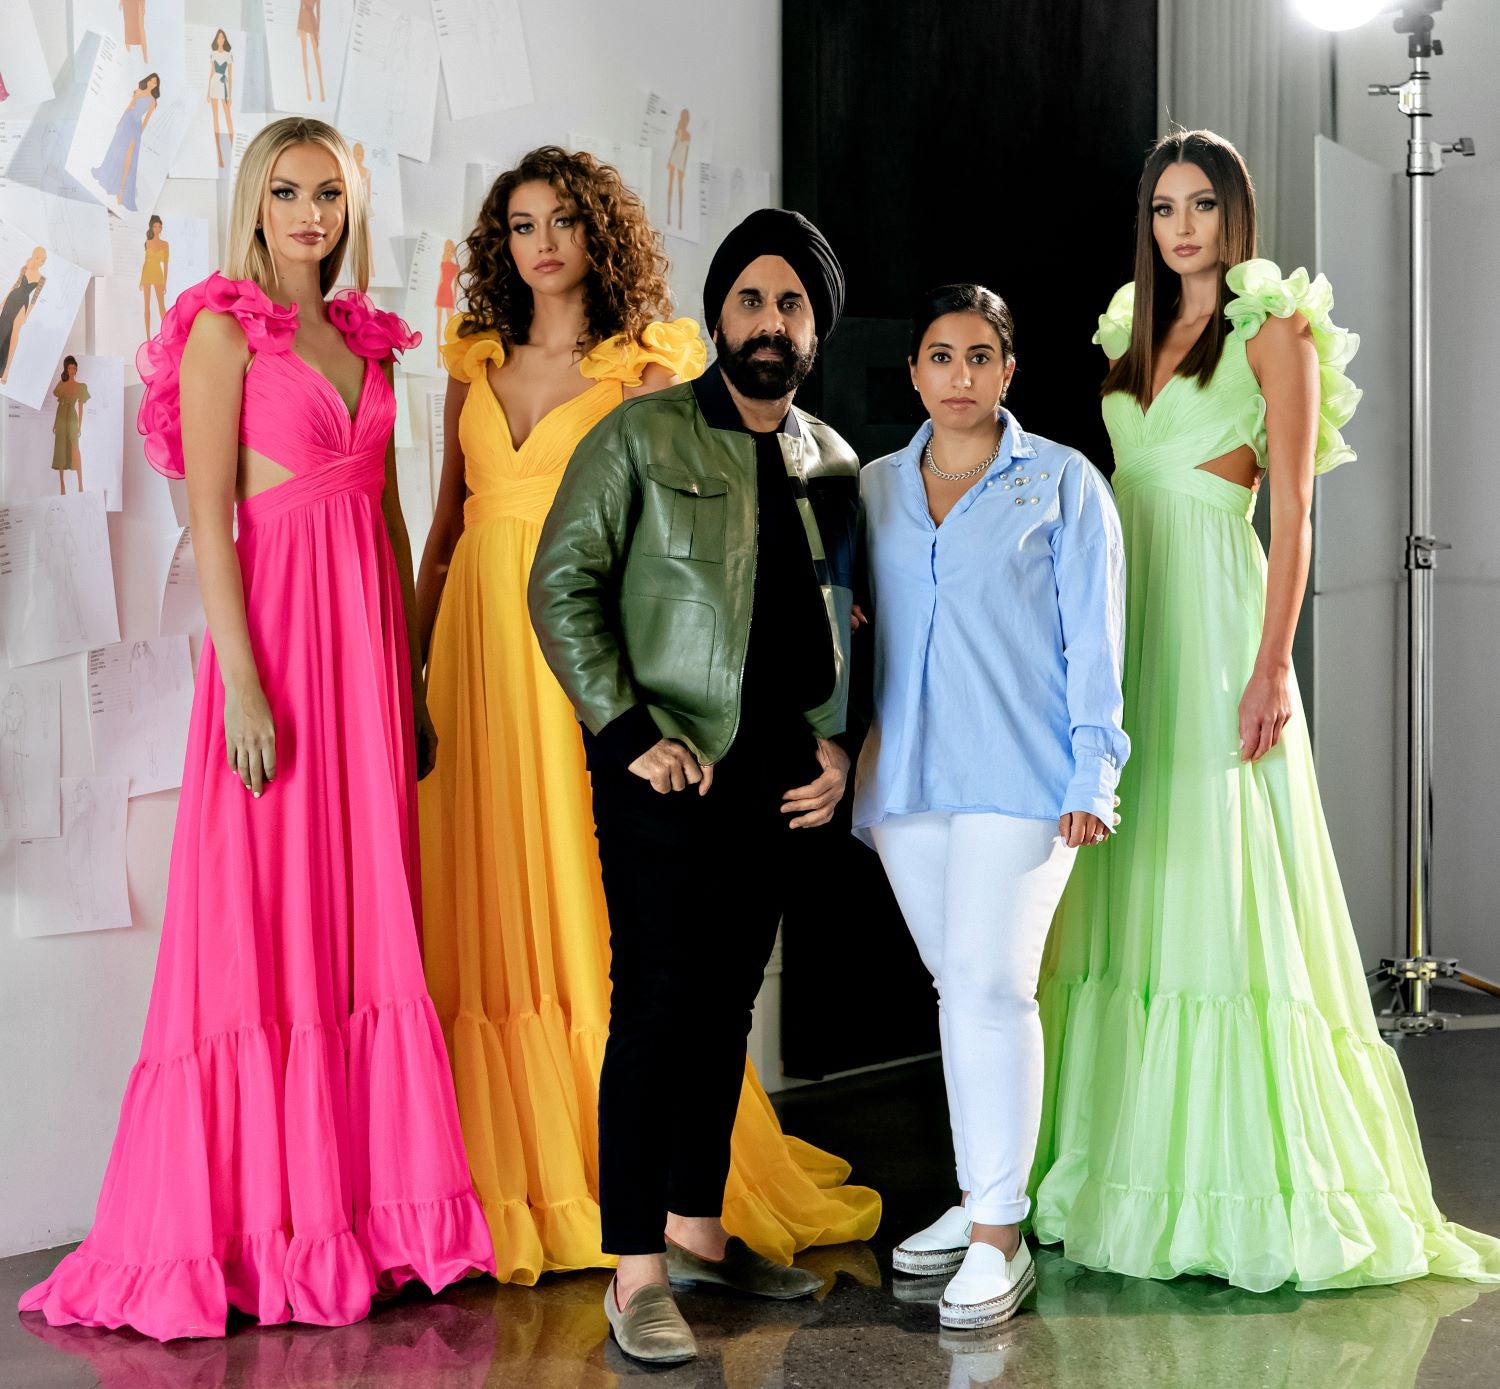 Top Designer Brands & Labels For Gowns & Dresses | LBB